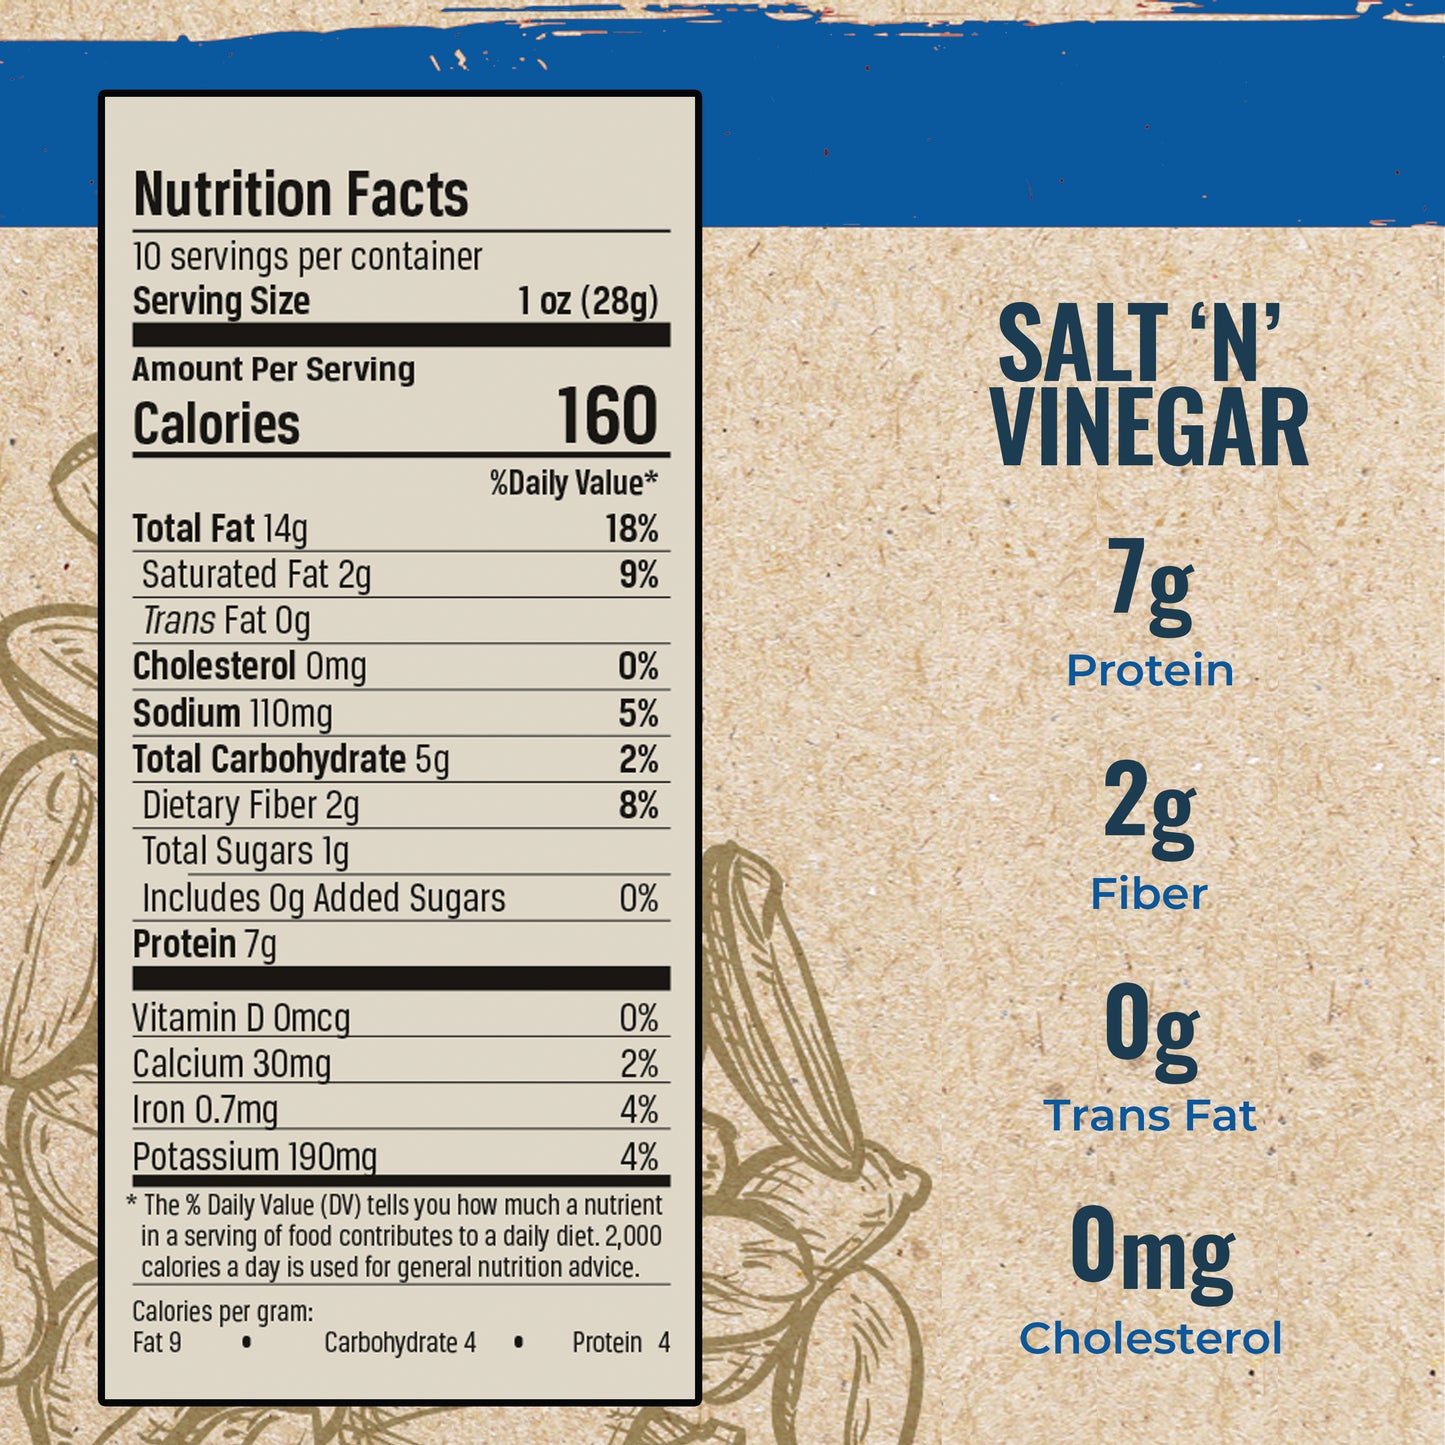 All American Salt 'N Vinegar